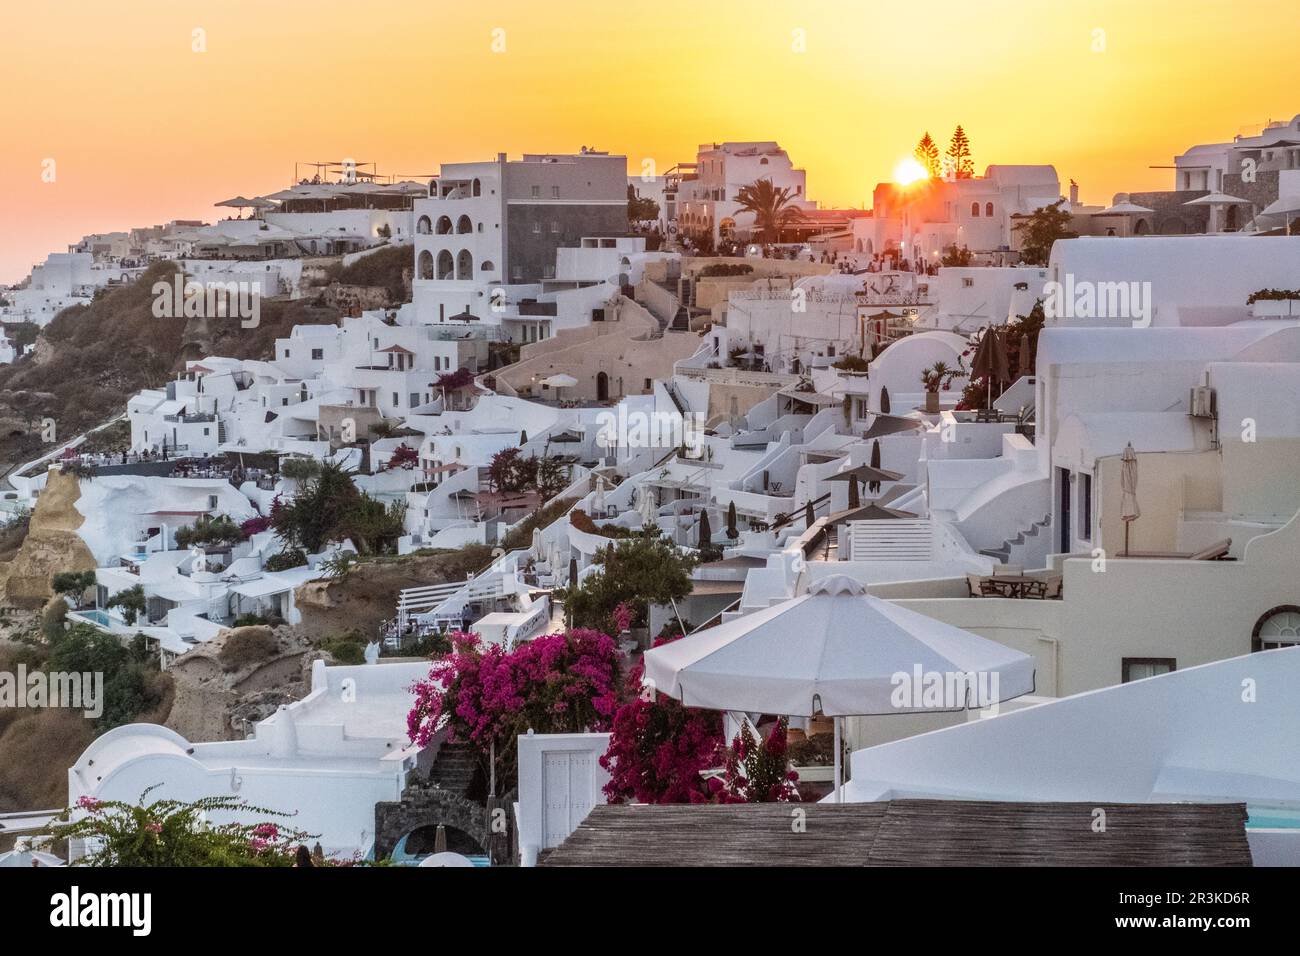 Vacances d'été panorama, luxe célèbre destination Europe. Architecture blanche à Santorin, Grèce. Banque D'Images